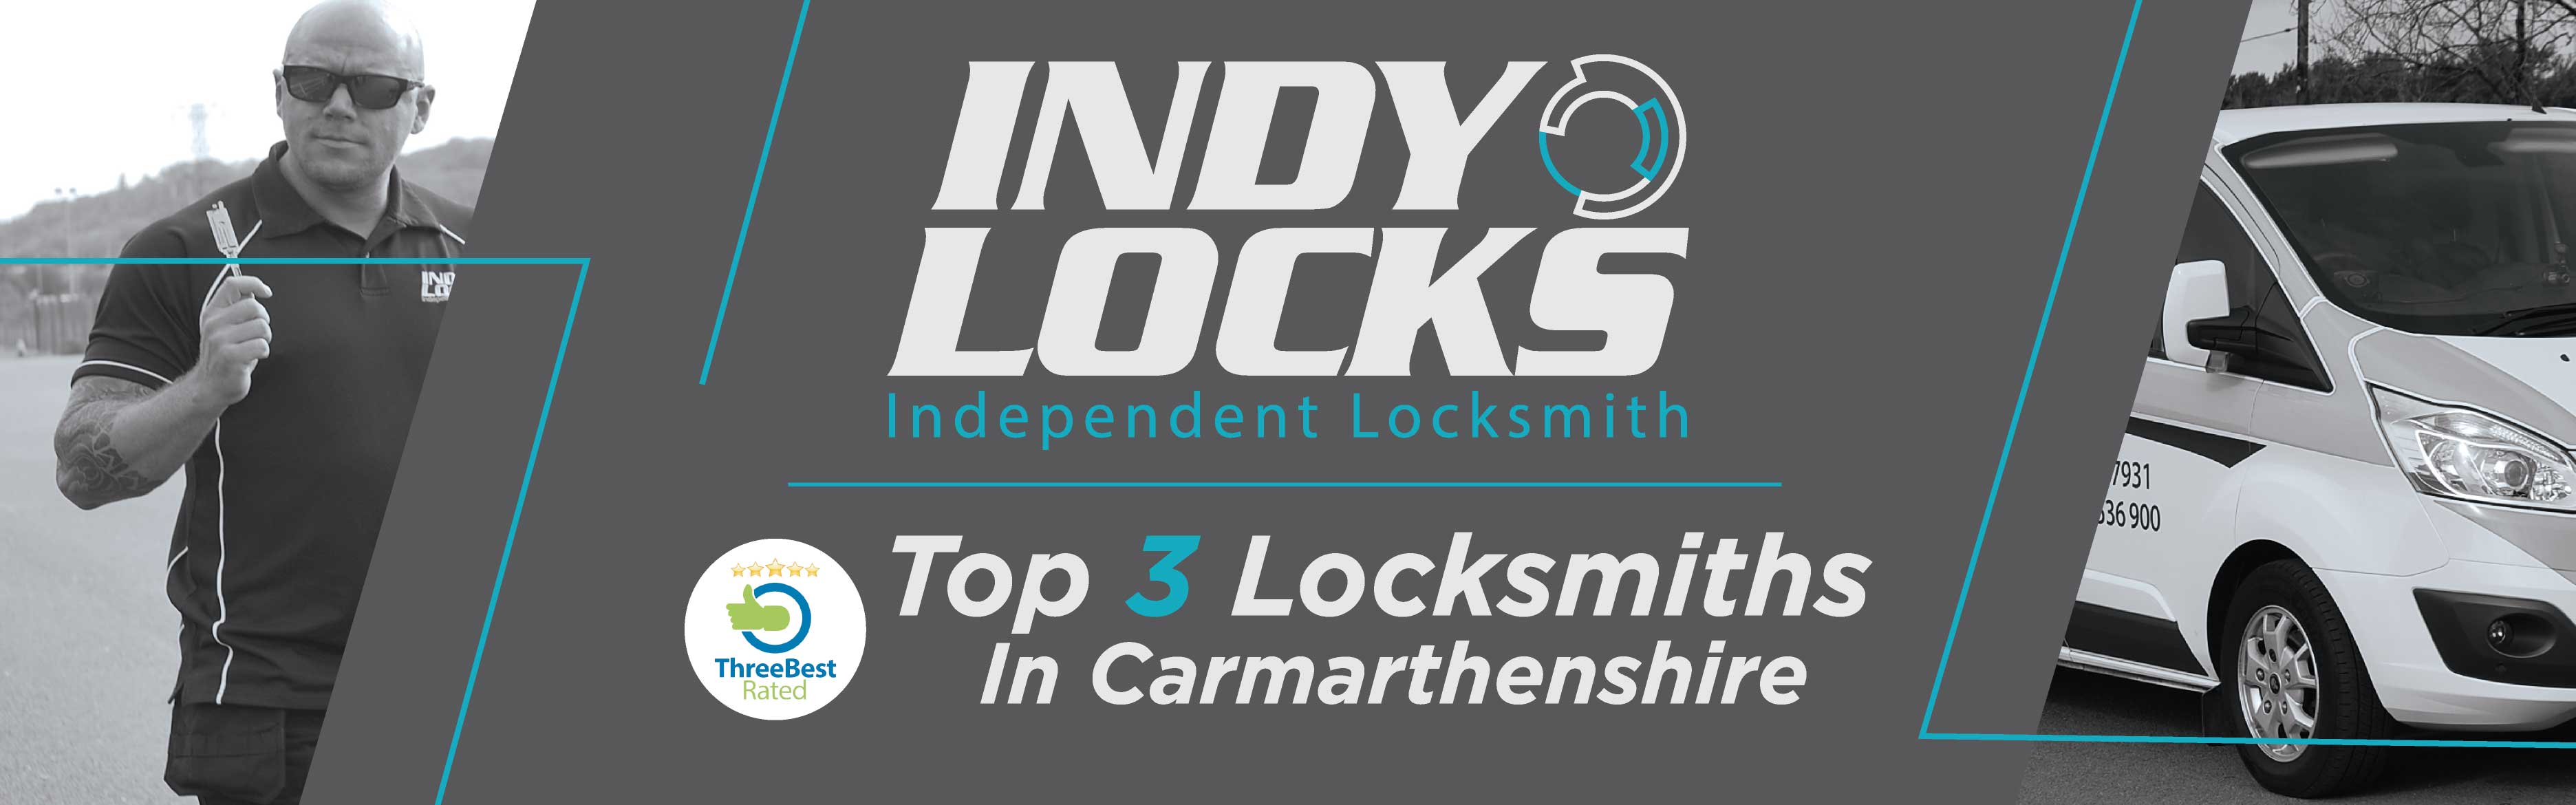 Indy Locks Swansea Locksmith Banner